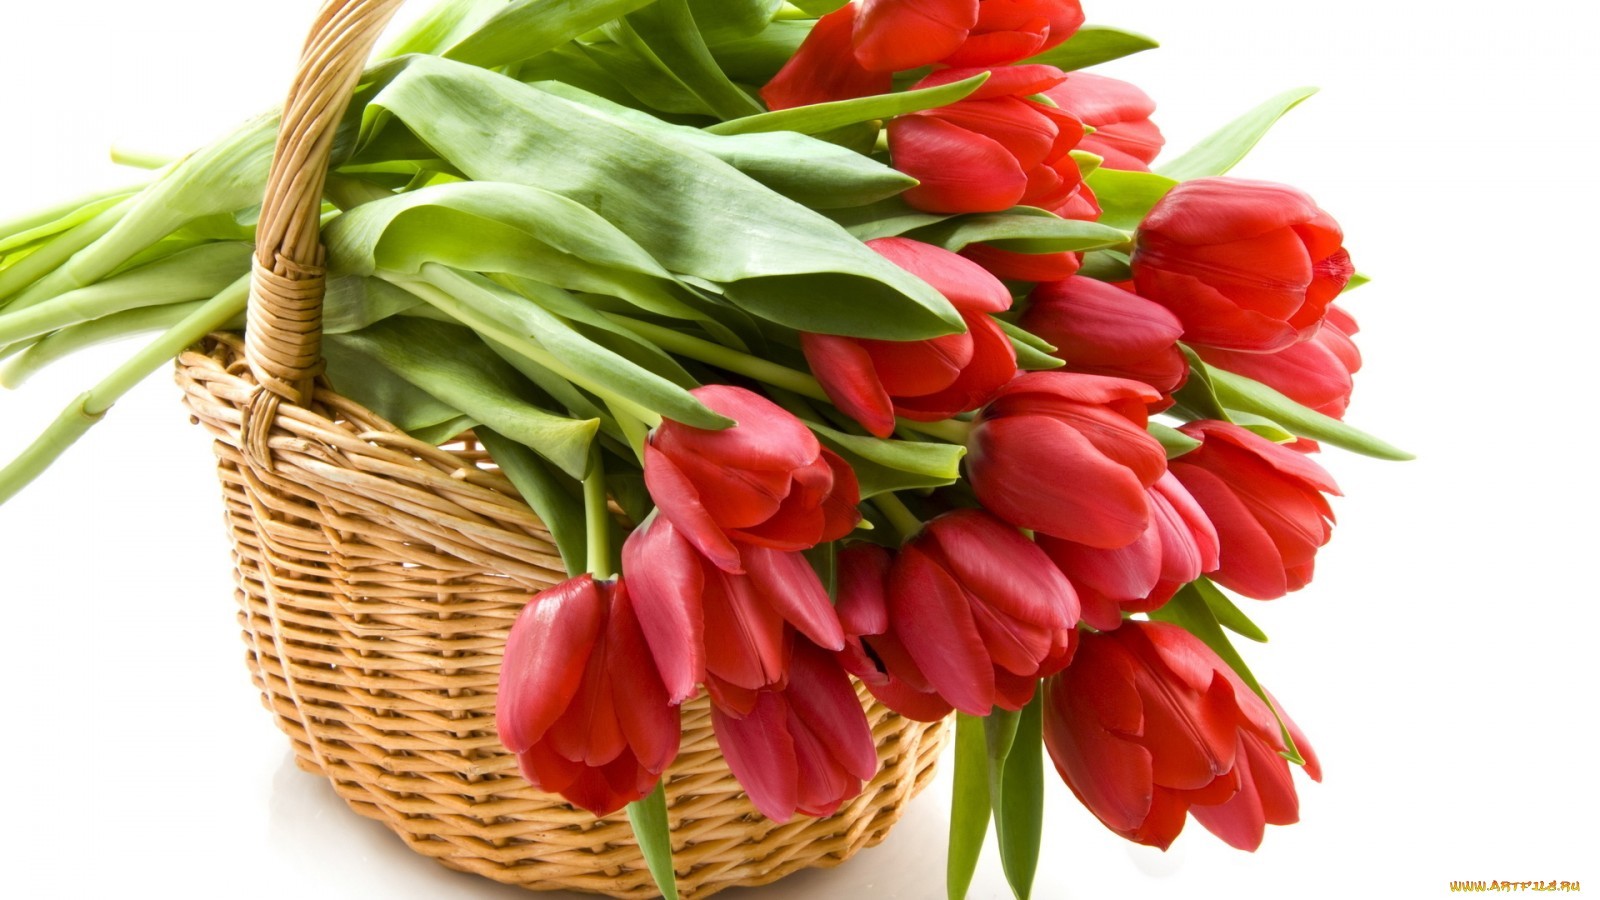 Скачать обои бесплатно Цветы, Растения, Тюльпаны картинка на рабочий стол ПК